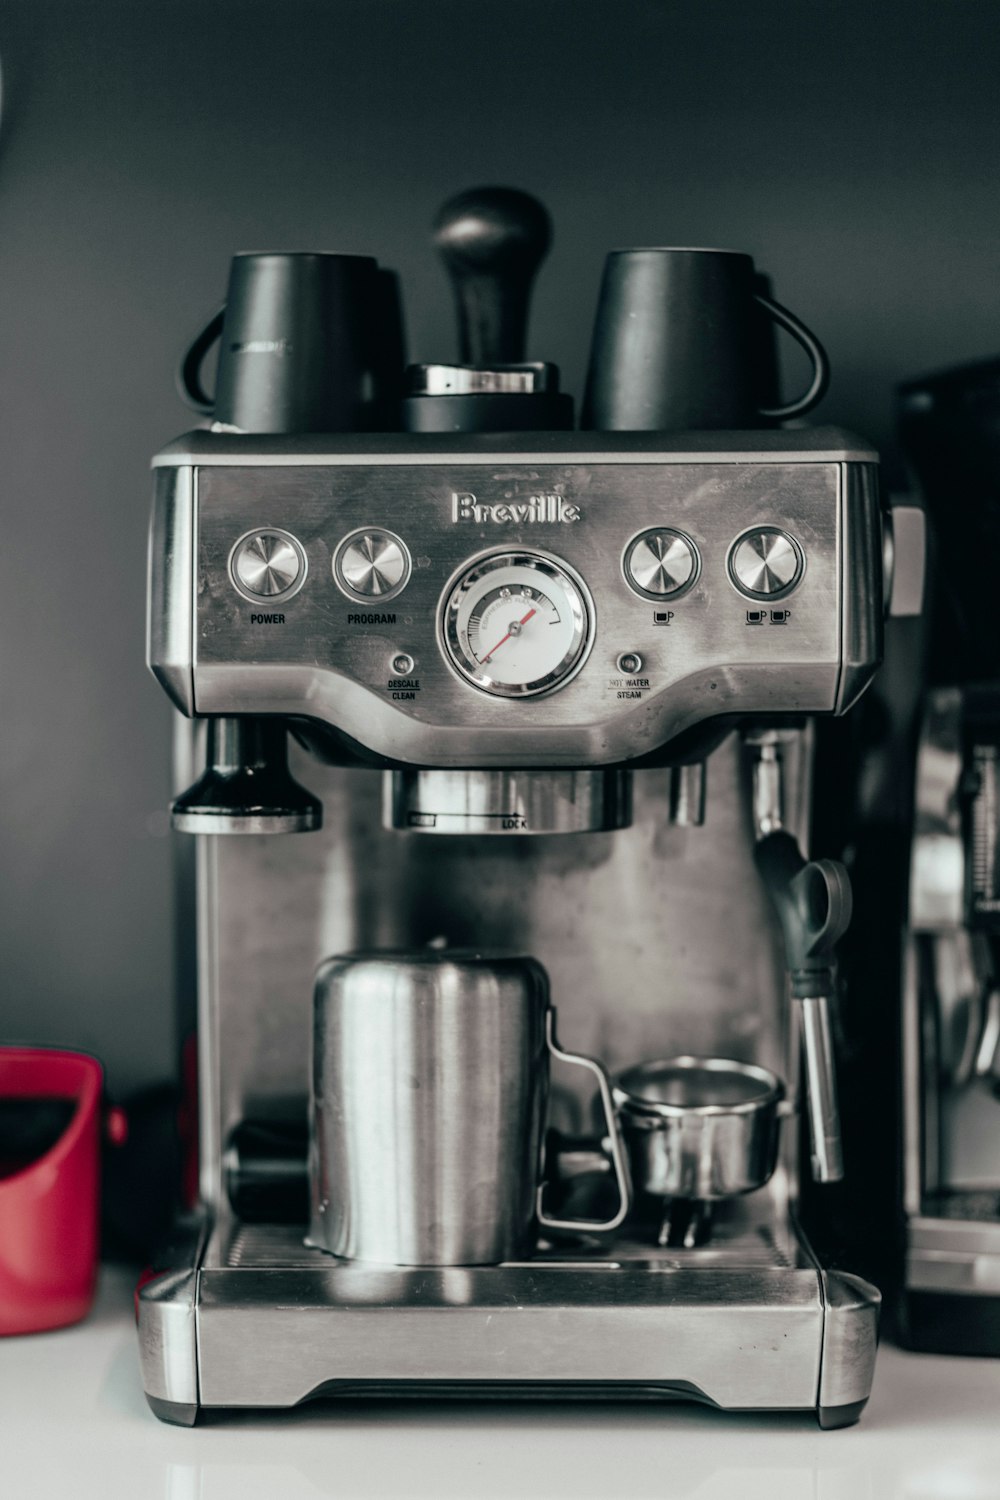 Breville espresso maker